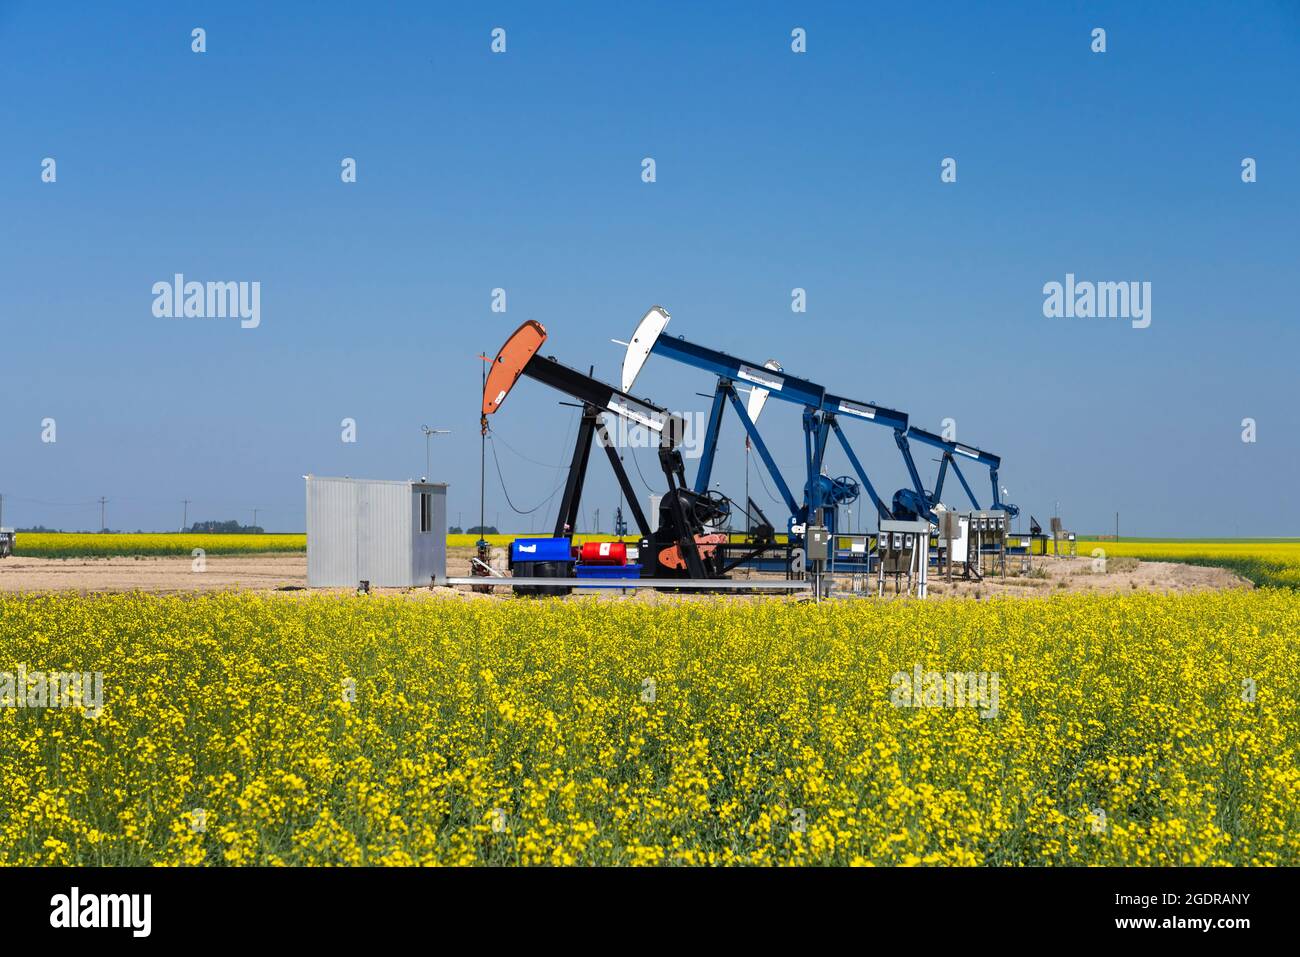 L'huile pond dans un champ de canola jaune près de Waskeda, Manitoba, Canada. Banque D'Images